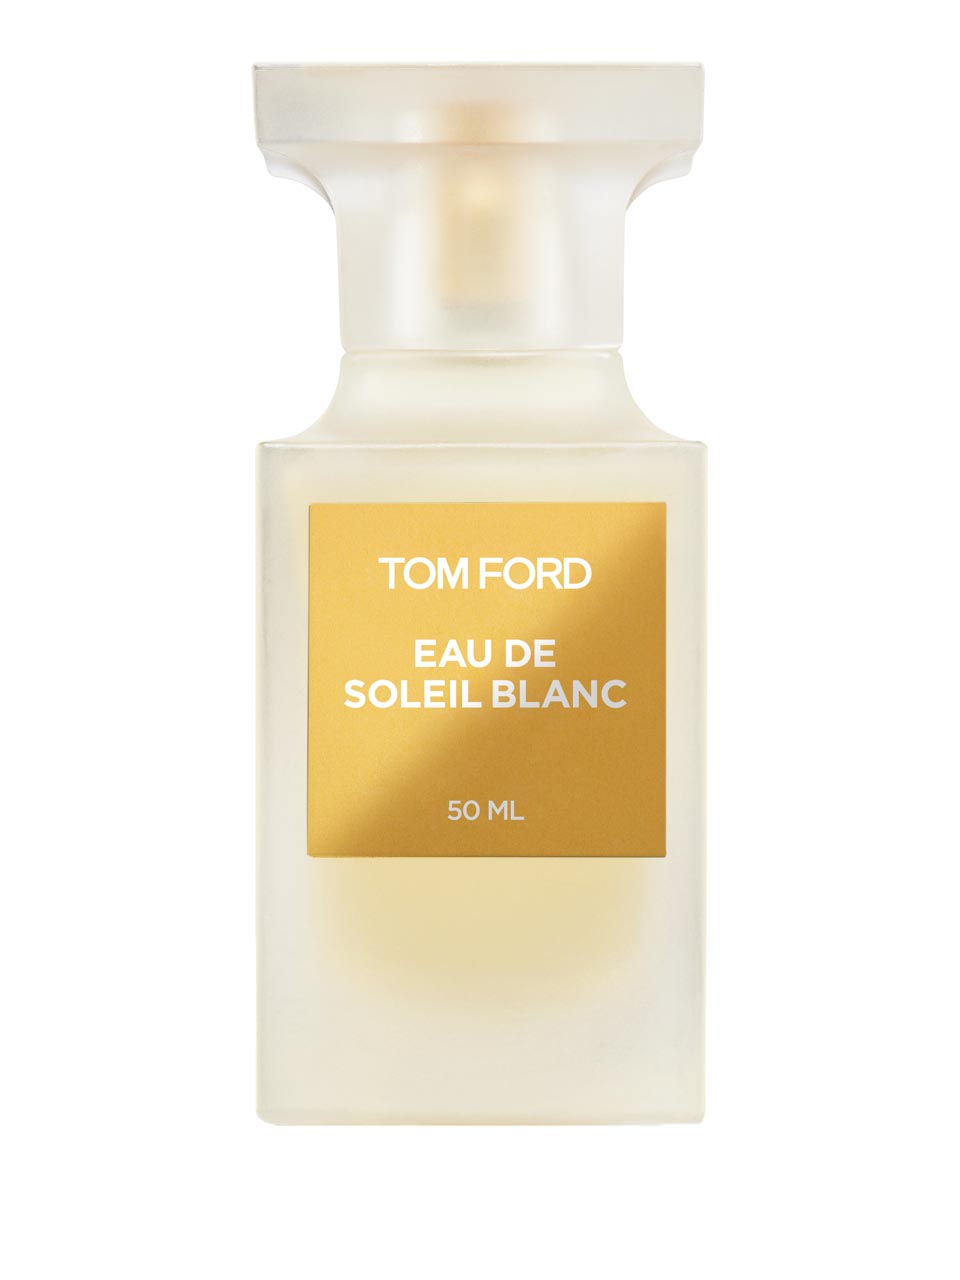 Tom Ford Eau de Soleil Blanc Eau de Toilette 50 ml null - onesize - 1